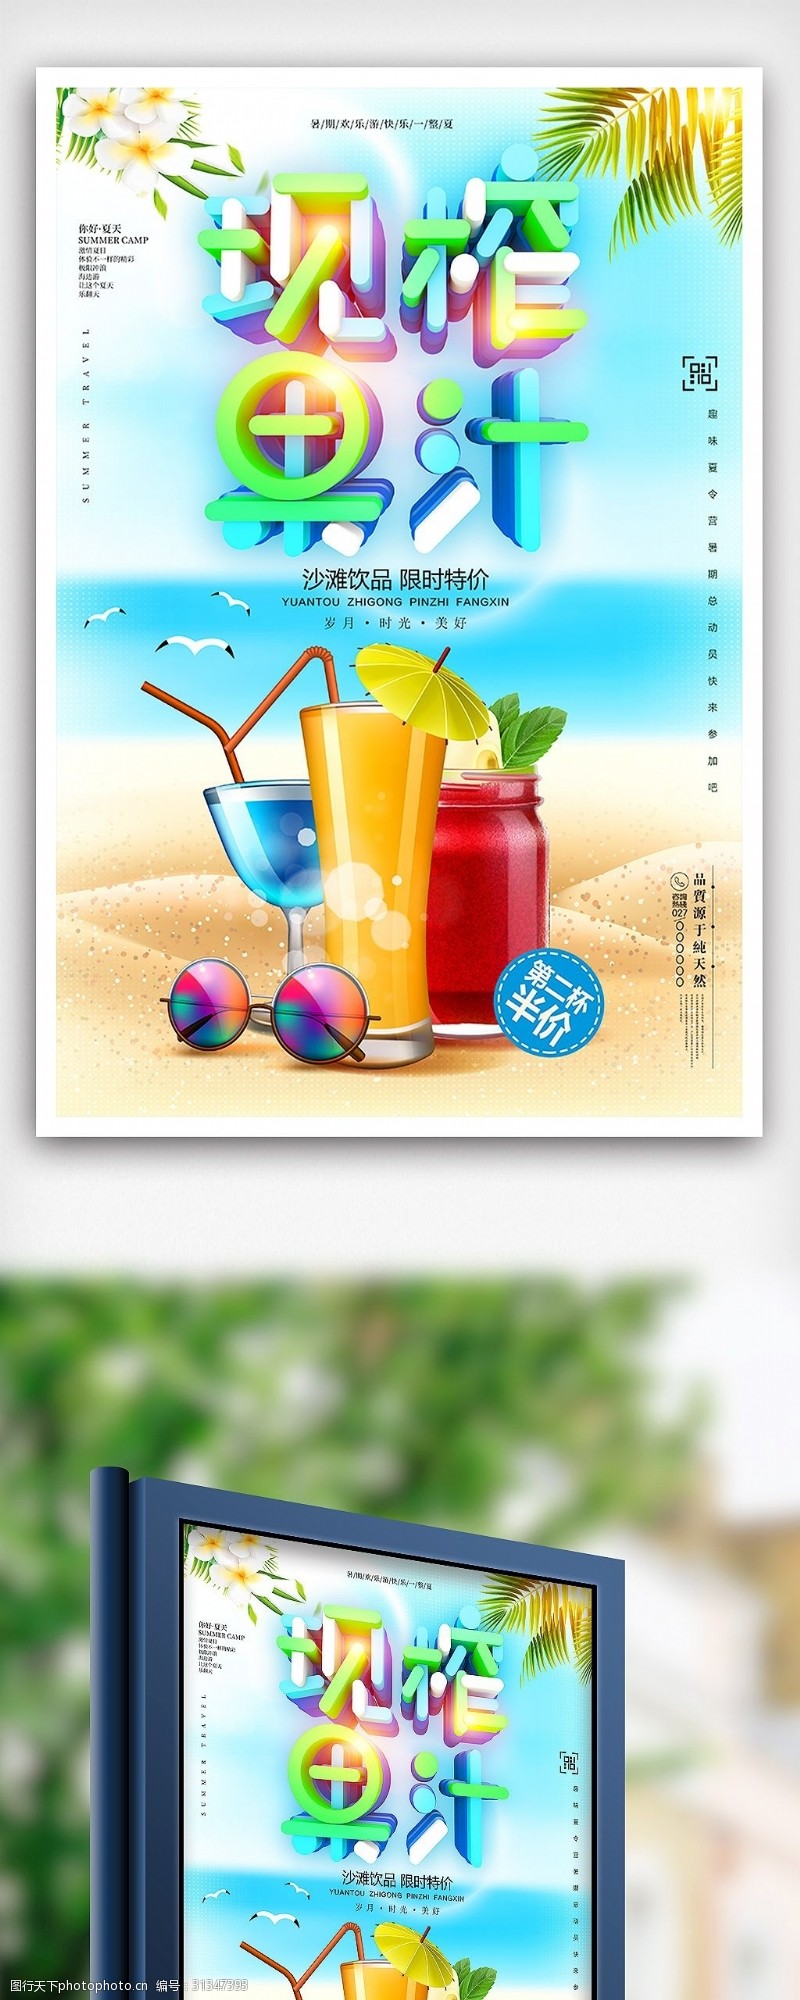 海鲜模板下载夏季鲜榨果汁促销海报设计模板